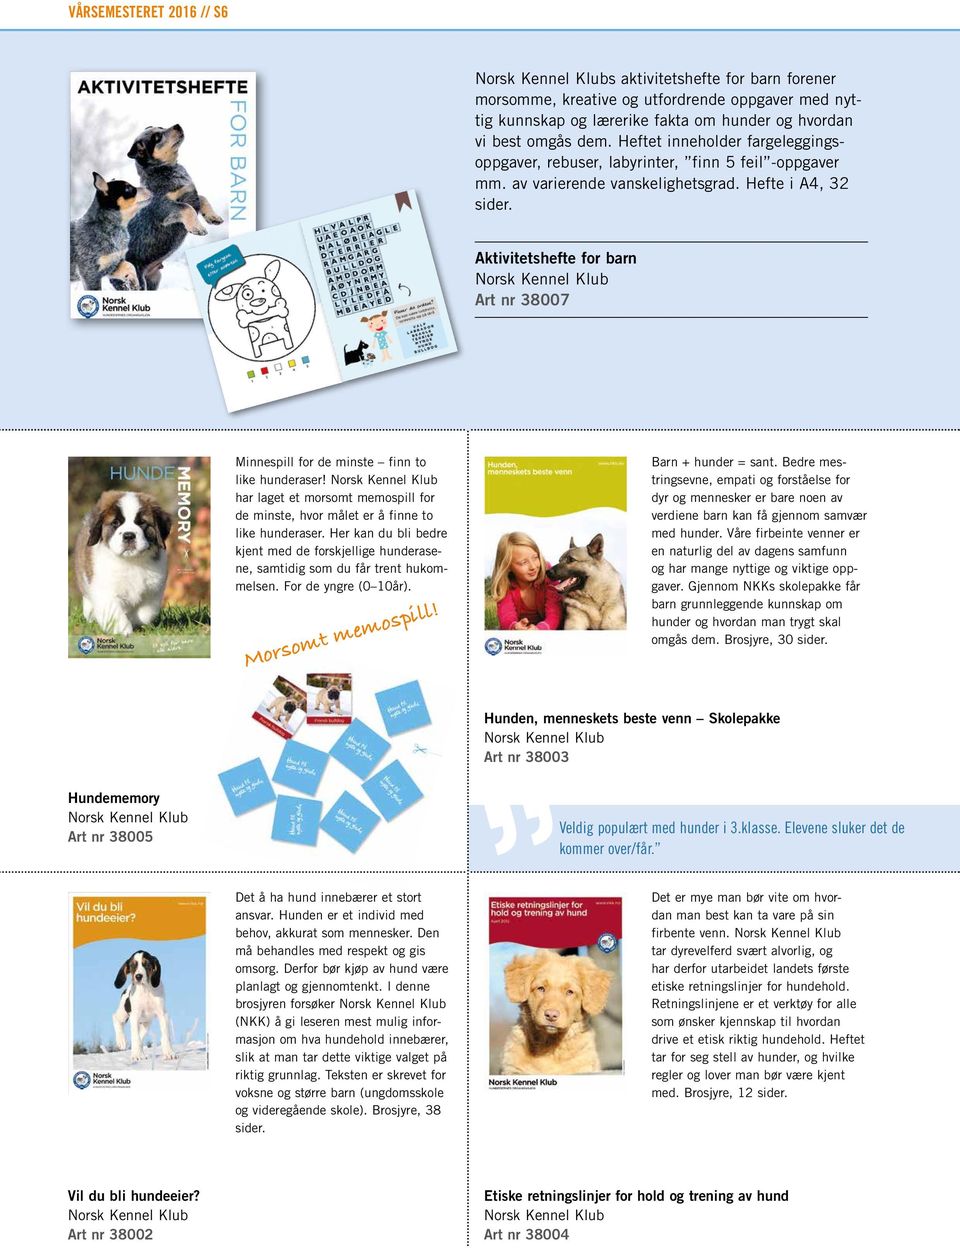 Aktivitetshefte for barn Norsk Kennel Klub Art nr 38007 Minnespill for de minste finn to like hunderaser!